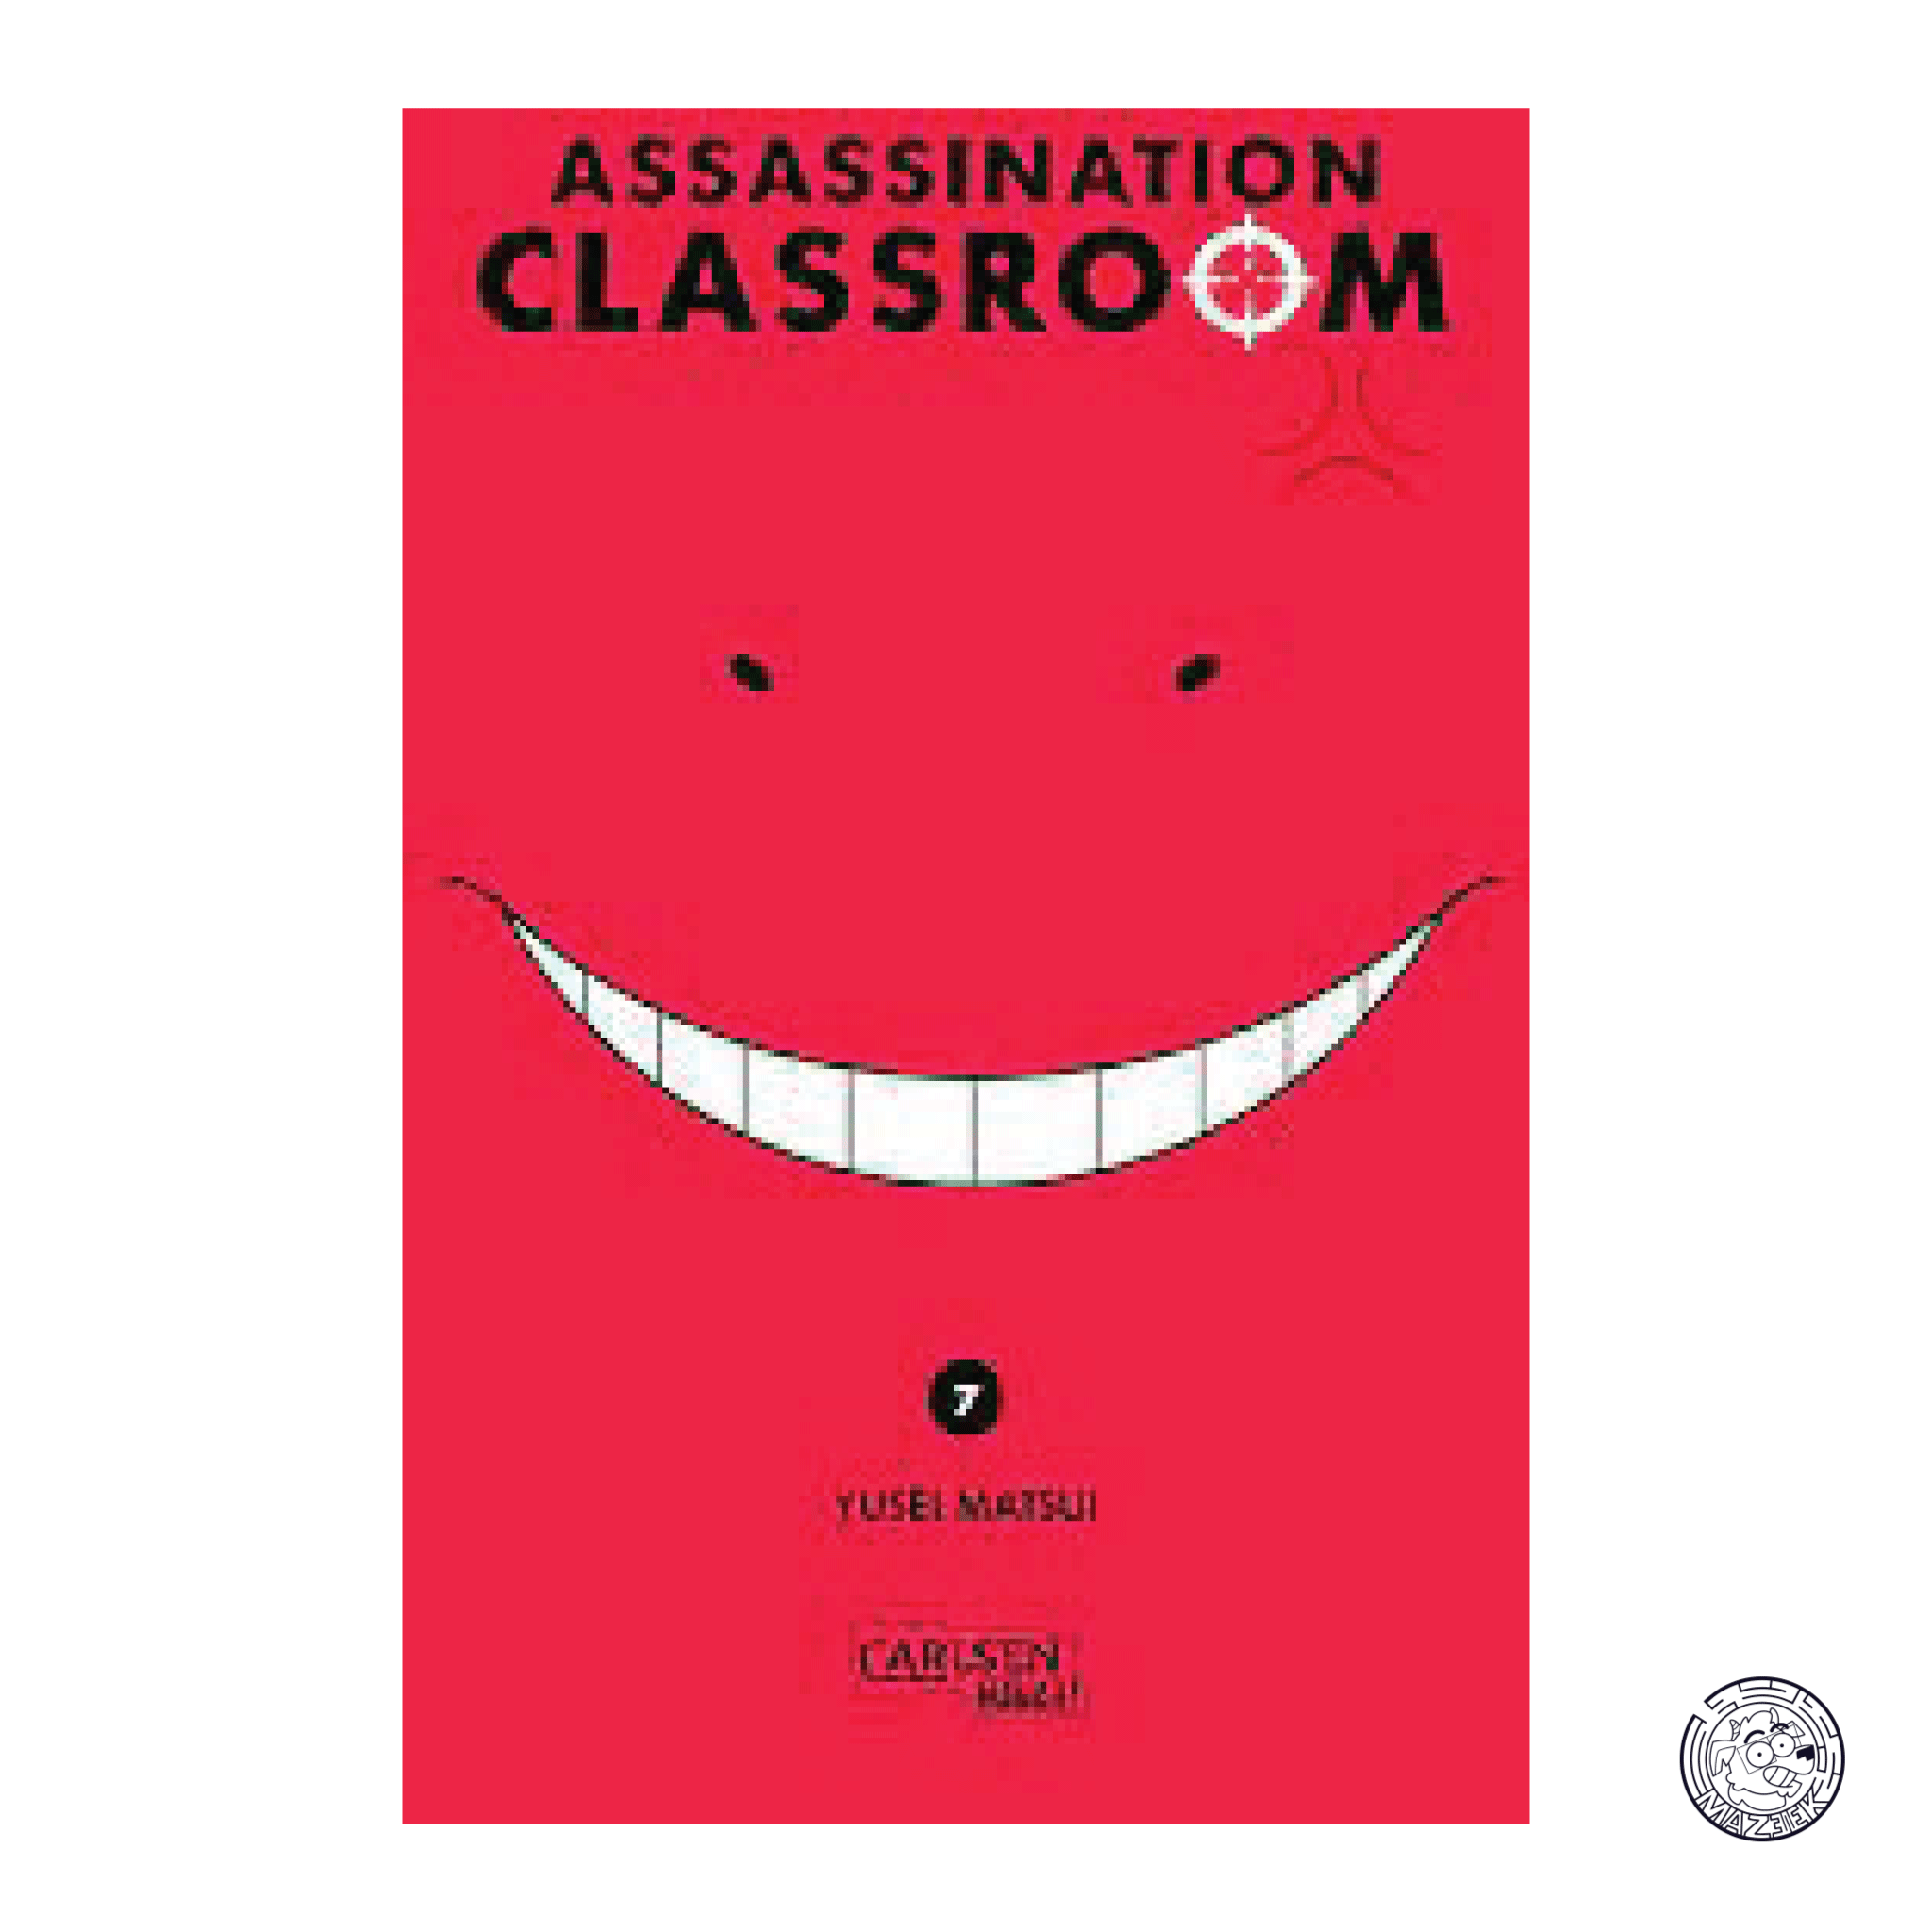 Assassination Classroom 07 - Reprint 2